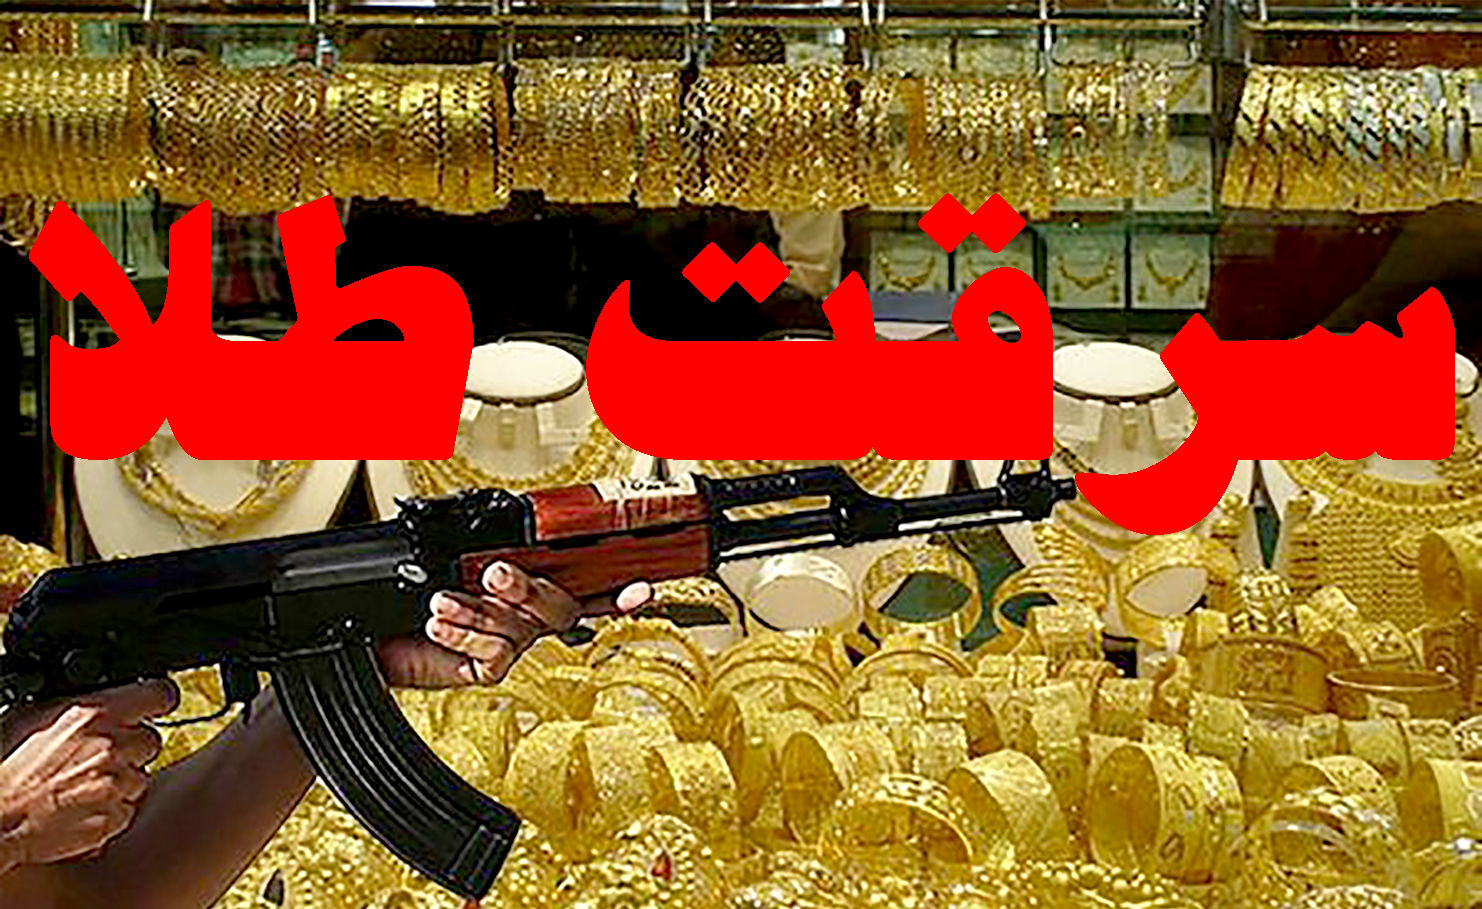  سرقت بزرگ طلا در مشهد